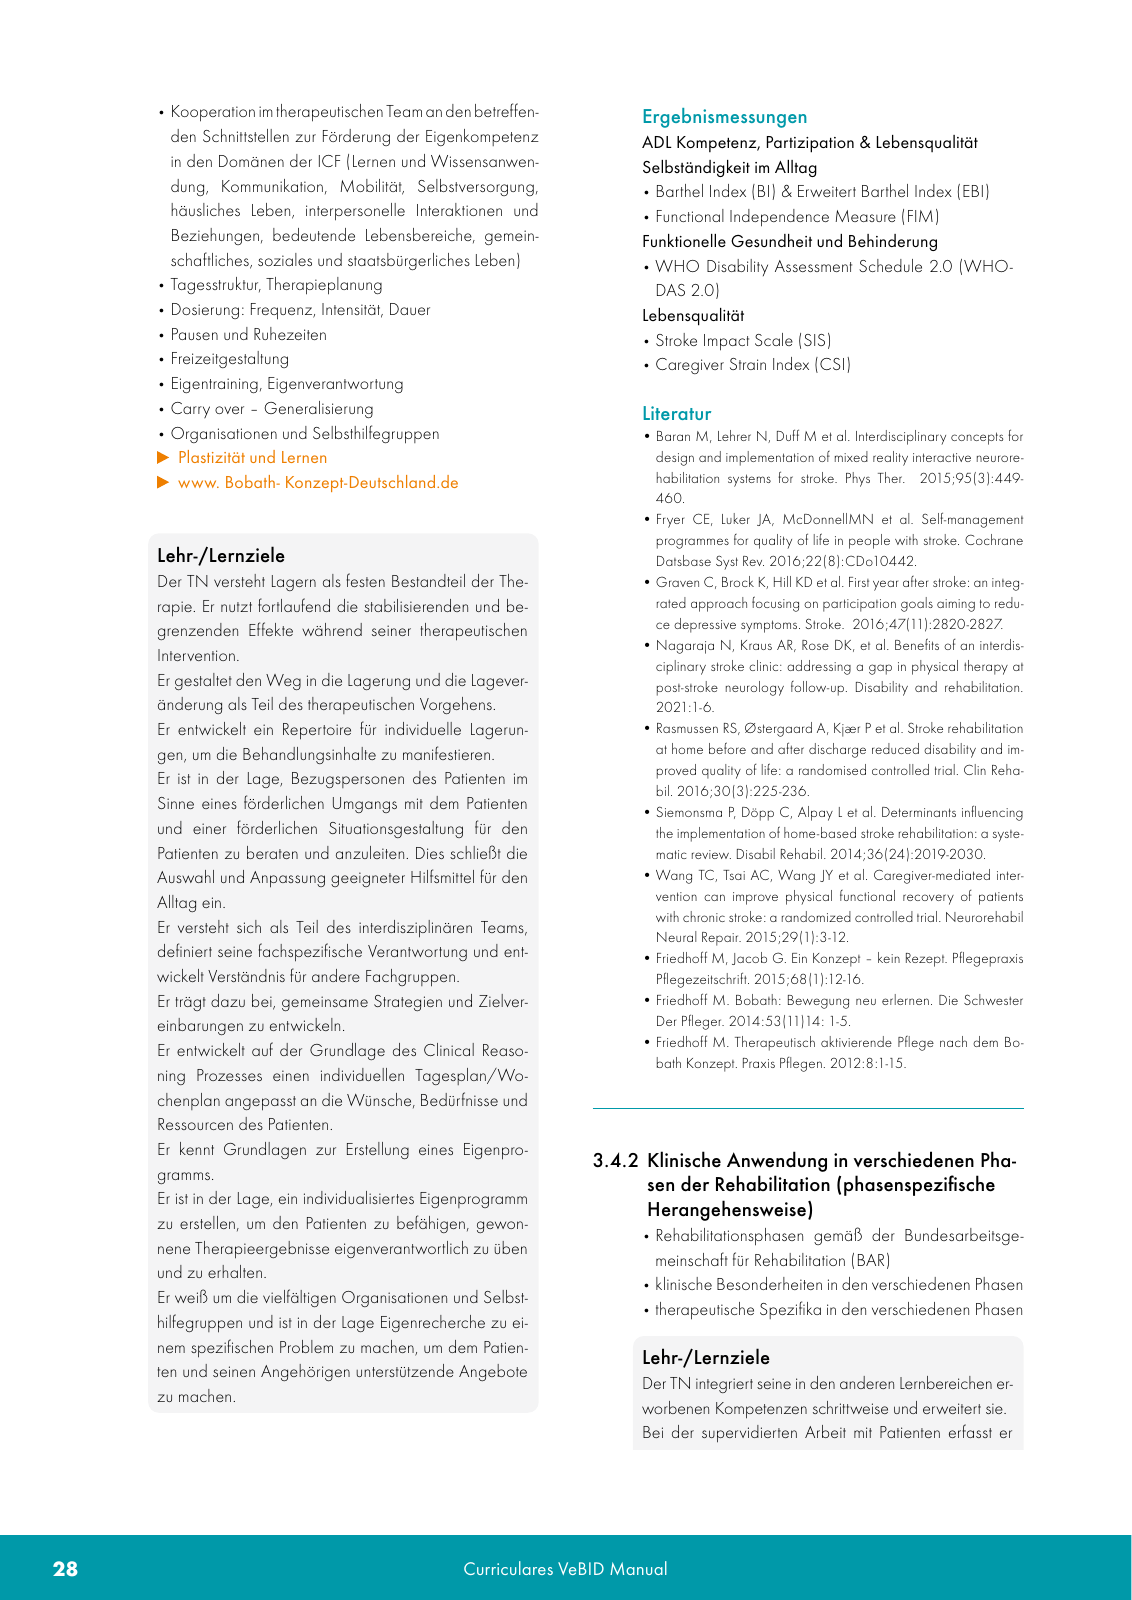 Vorschau VeBID Curriculum 2022 Seite 28